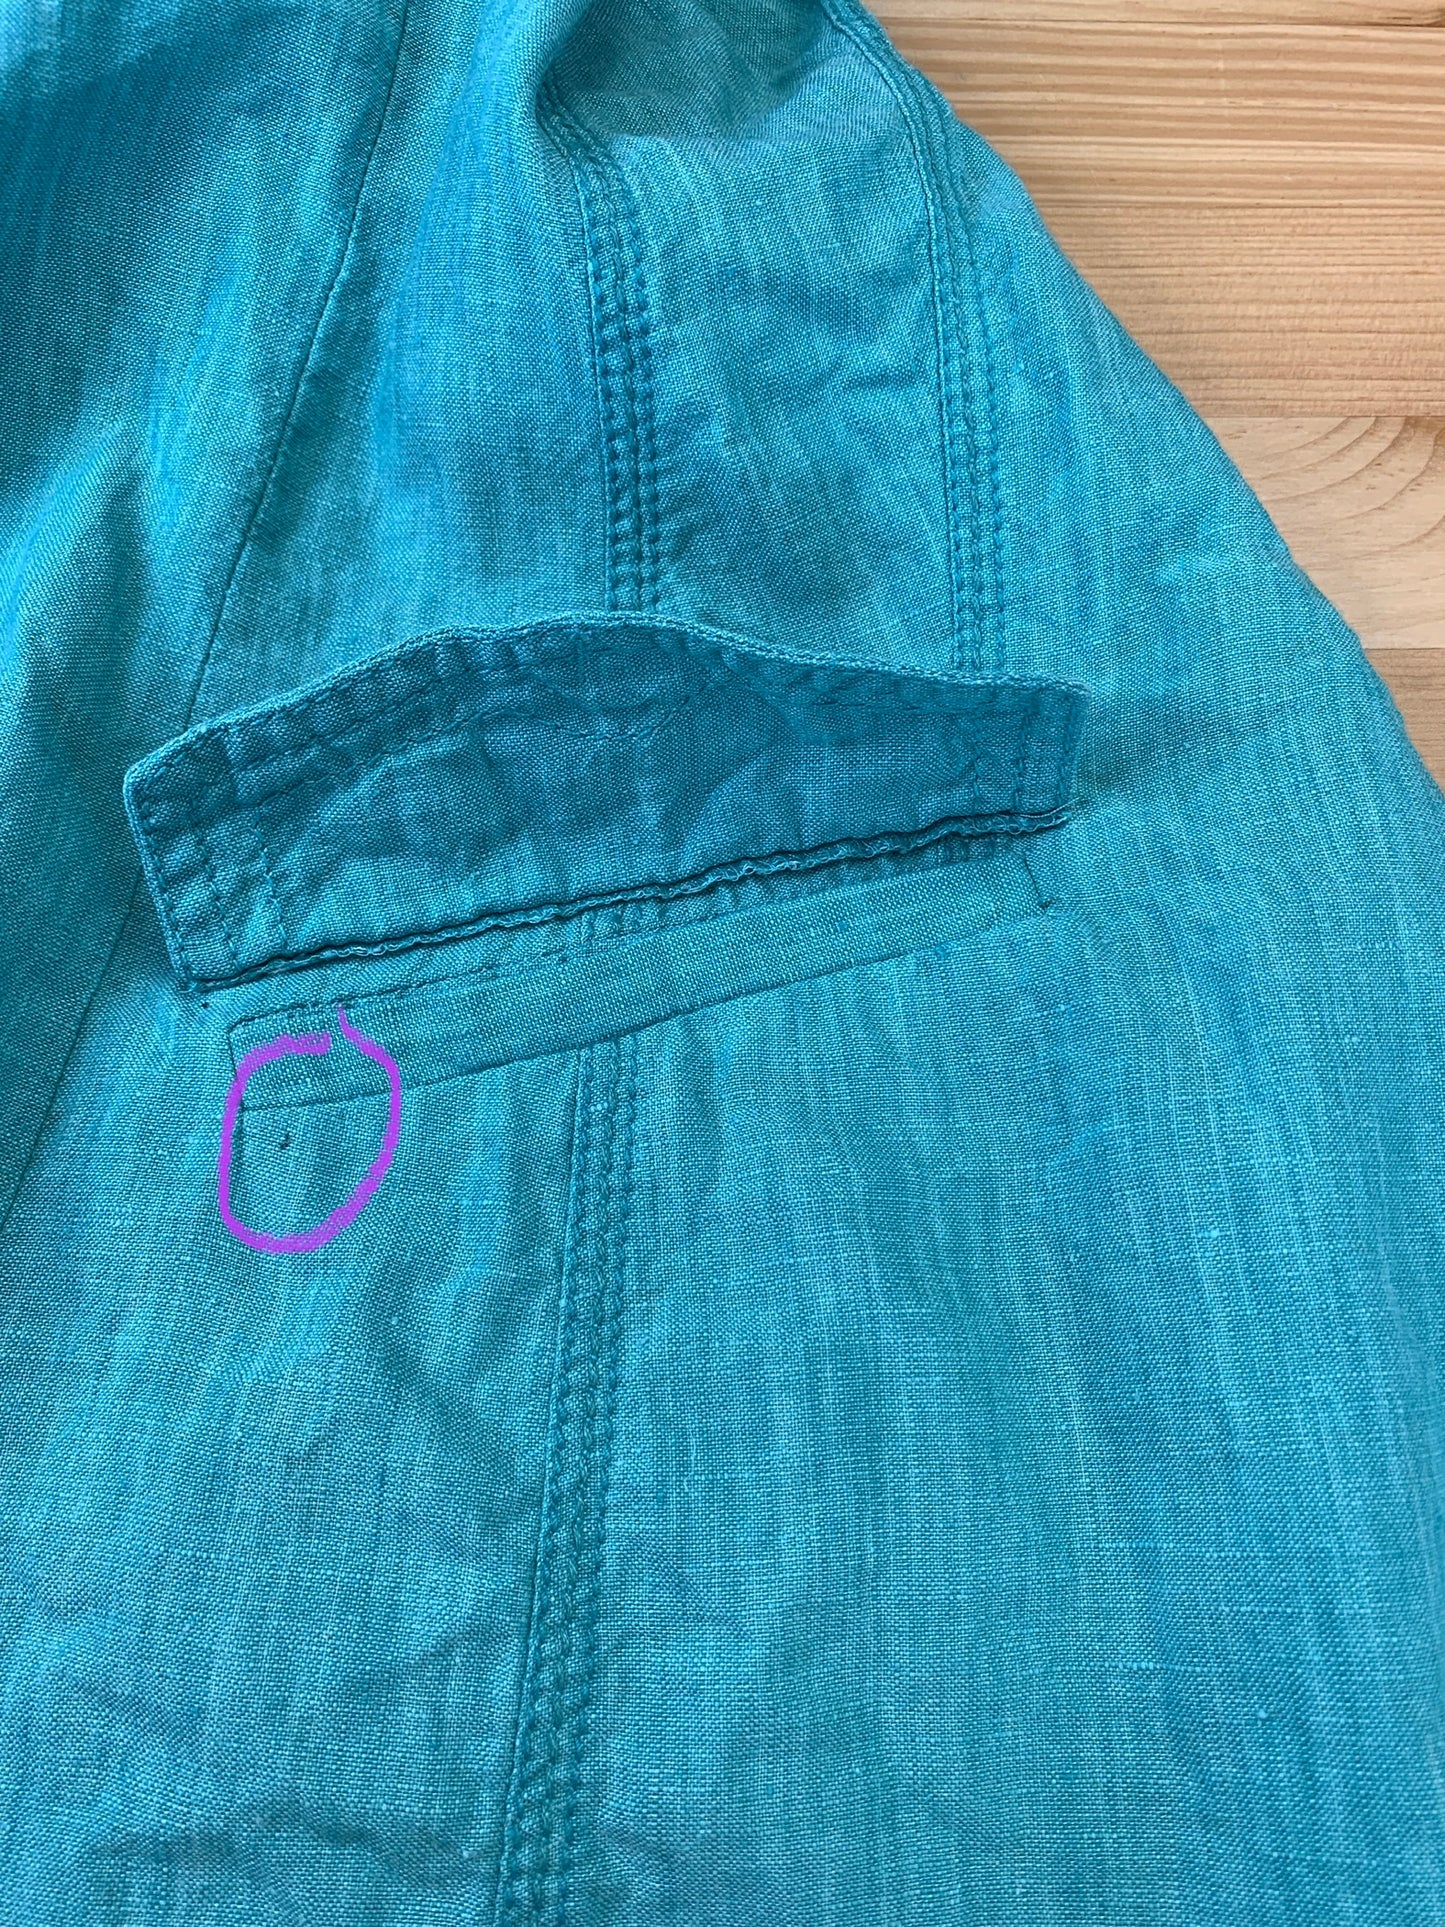 Blazer cintré turquoise en pur lin lavable (6)